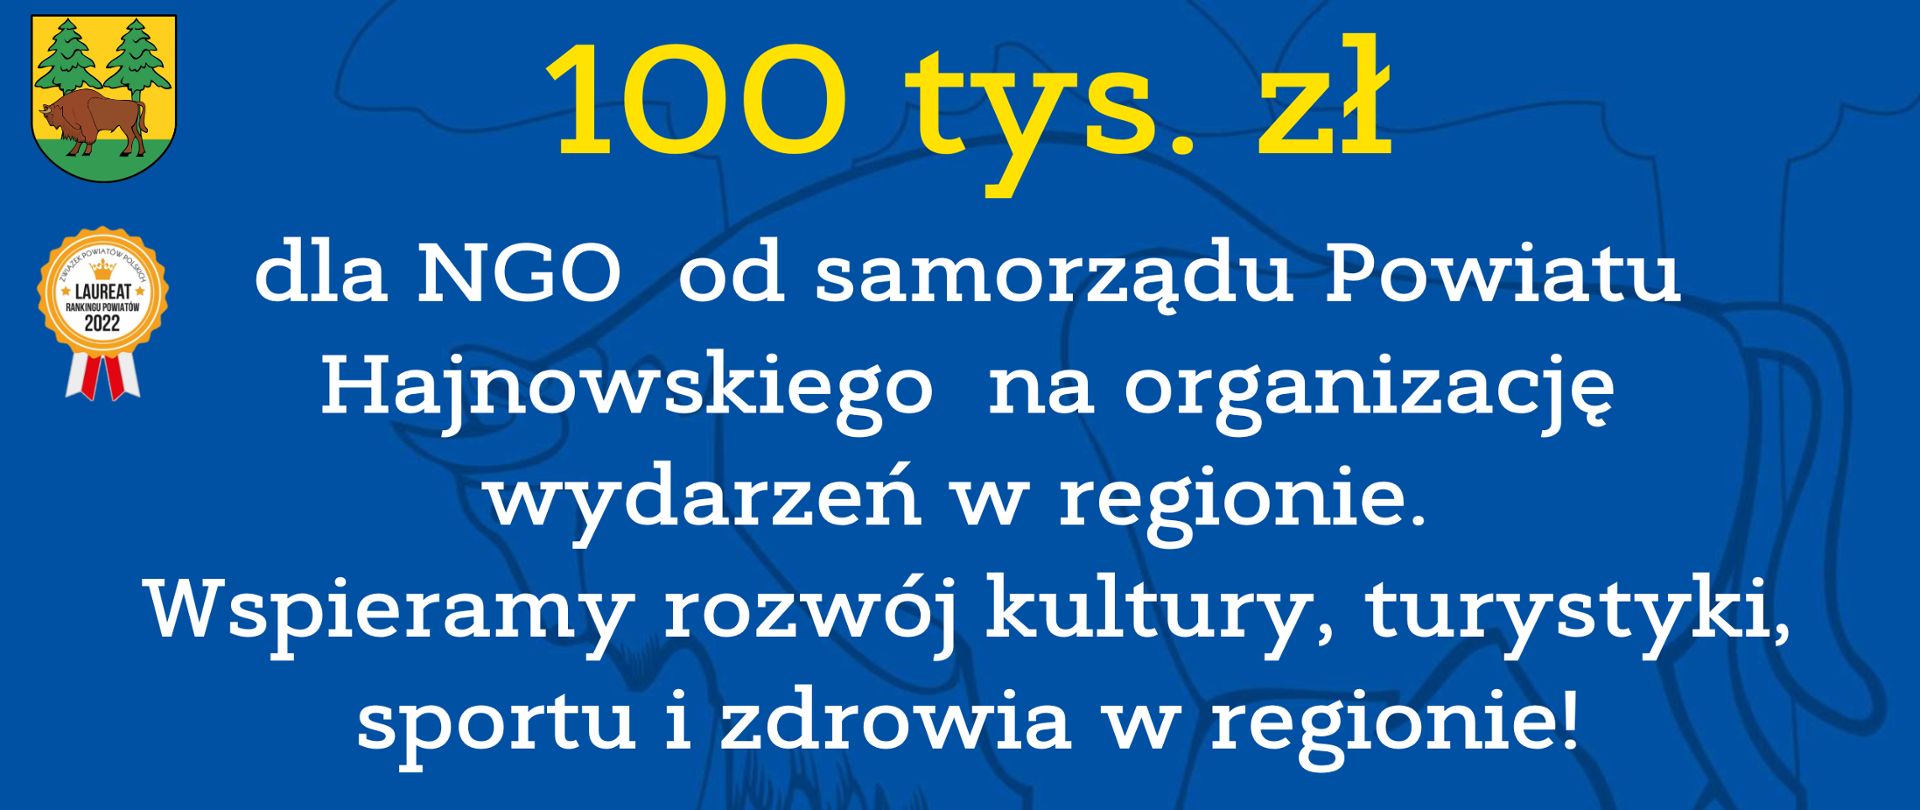 100 tys. zł dla NGO od samorządu Powiatu Hajnowskiego na organizację wydarzeń w regionie. Wspieramy rozwój kultury, turystyki, sportu i zdrowia w regionie!